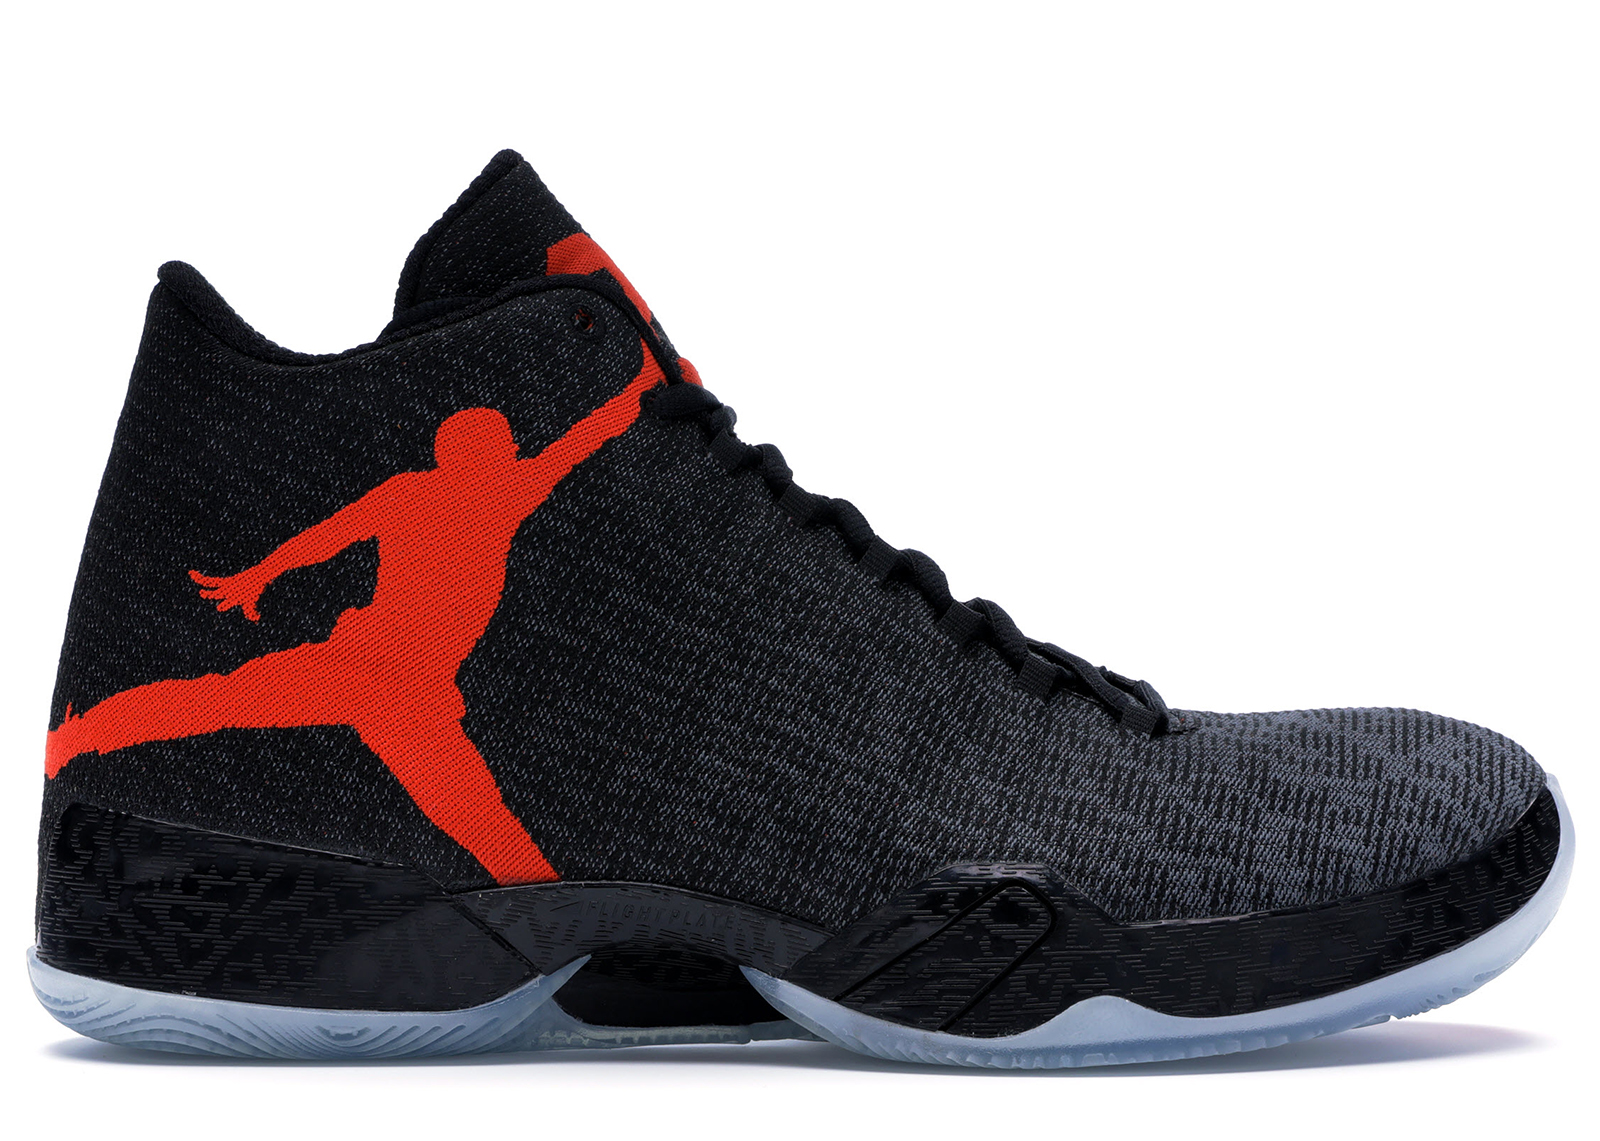 Buy Air Jordan 29 Shoes & New Sneakers - StockX